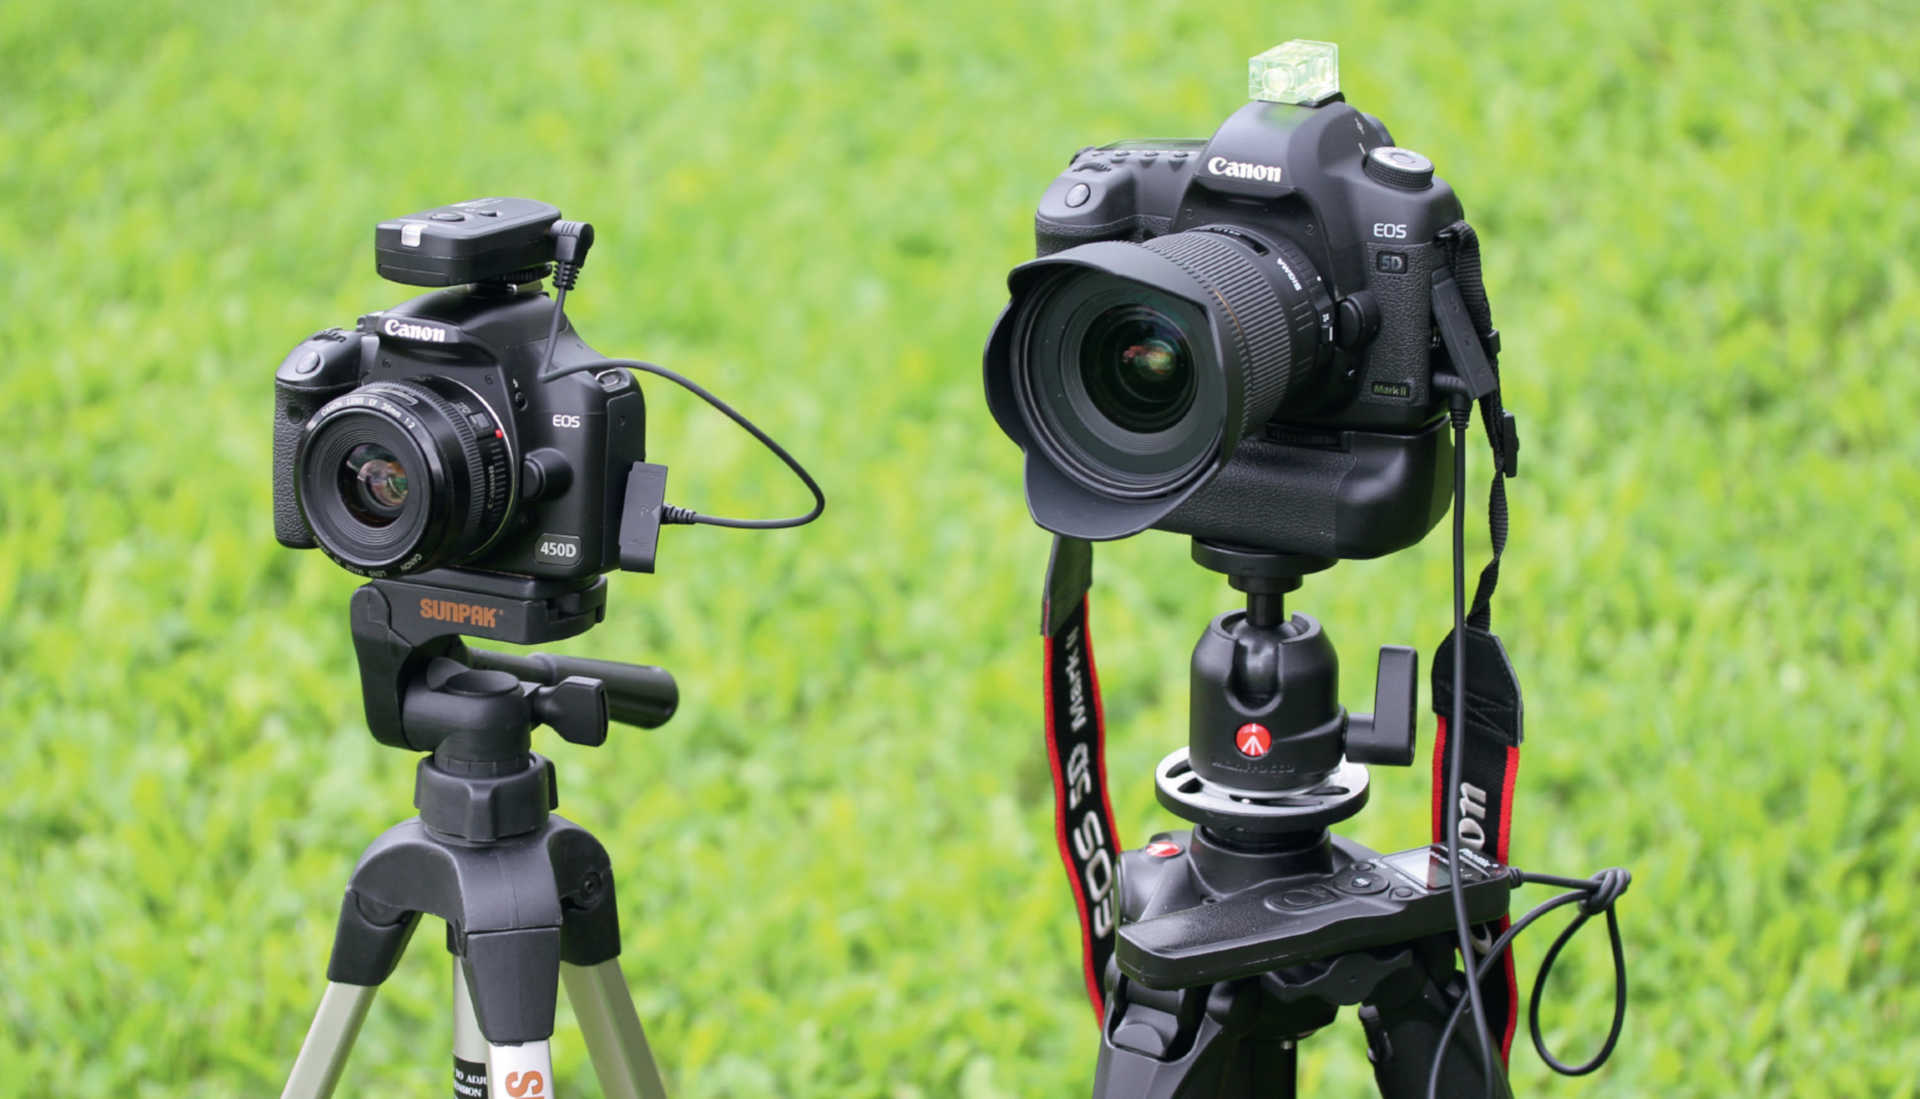 Für den Einstieg in die Strichspurfotografie reichen eine preiswerte Kamera mit Weitwinkeloptik
(hier ist links eine Canon EOS 450D mit preiswertem 35mm Objektiv abgebildet), ein Fernauslöser
(hier wird ein Funk-Fernauslöser verwendet) und ein preiswertes Stativ. Engagierte Astrofotografen
können eine digitale Spiegelreflexkamera mit Vollformat-Chip zusammen mit einem
lichtstarken Weitwinkelobjektiv (hier eine Canon 5D mit einem Objektiv mit 20mm Brennweite
und Blende 1,8) verwenden – rechts abgebildet. Der angeschlossene Batteriegriff ermöglicht eine
längere Aufnahmesequenz, die vom programmierbaren Fernauslöser autark abgearbeitet wird. U. Dittler